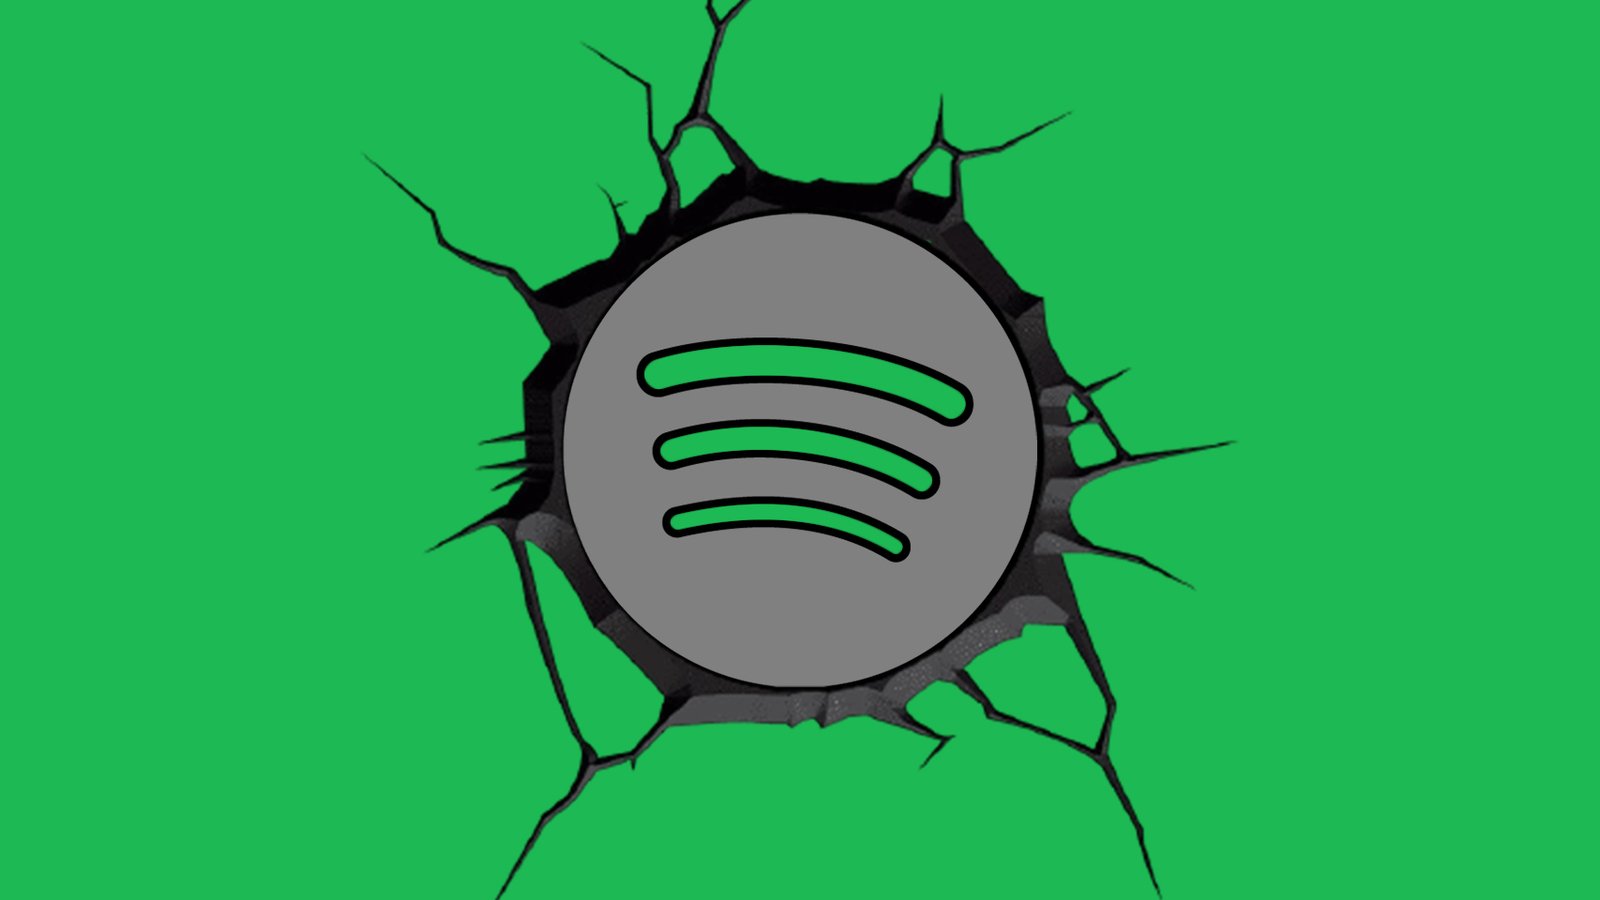  Spotify quiere leer tus emociones para recomendarte música